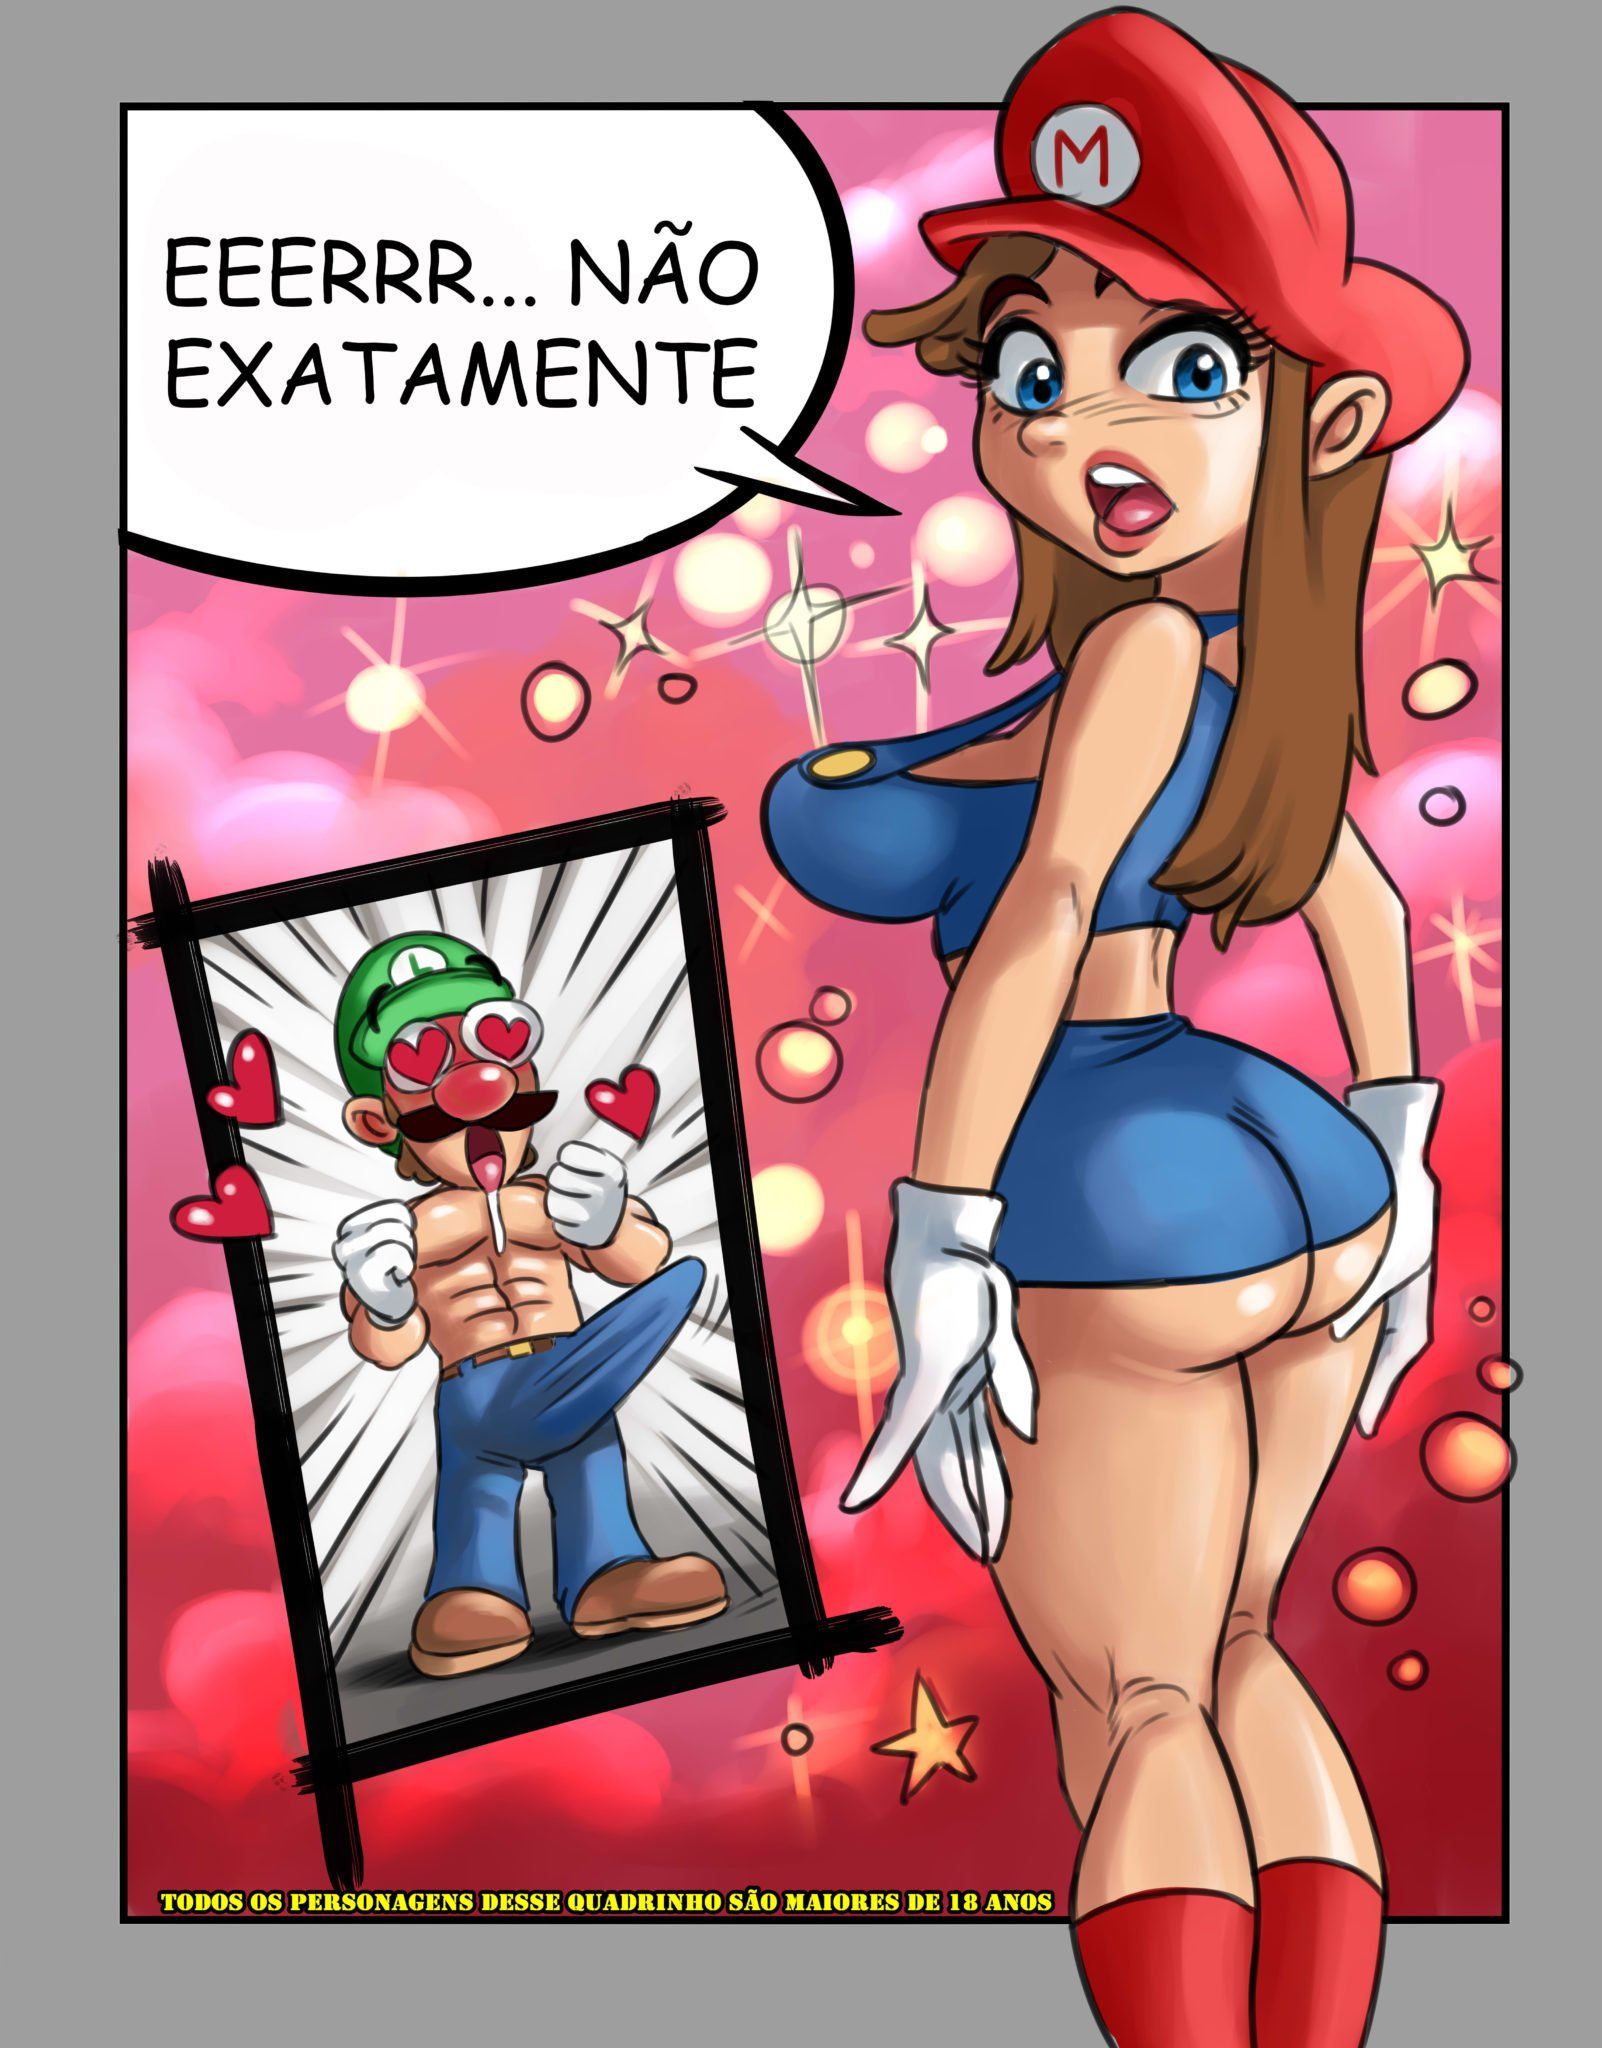 As aventuras do Super Mario XXX